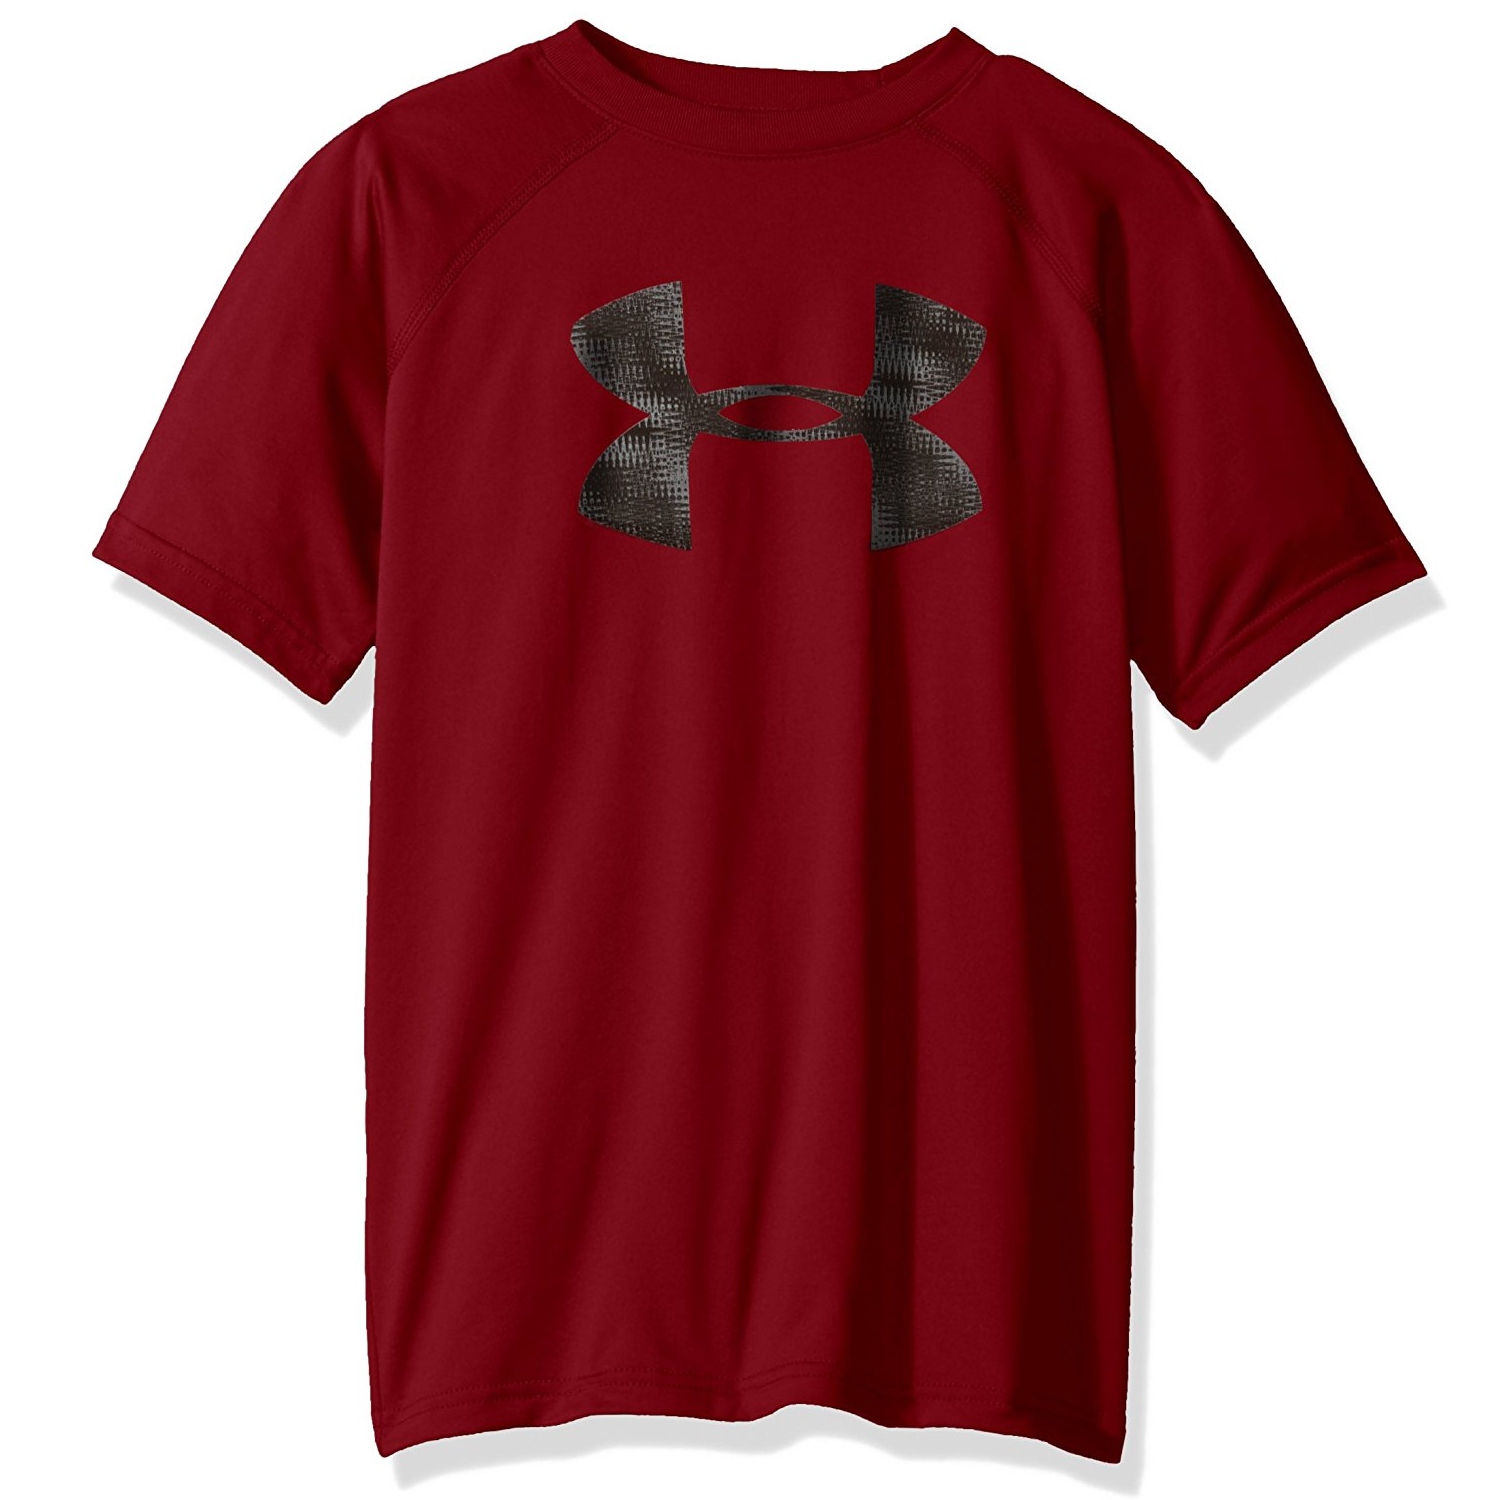 Under Armour Boys’ Tech Big Logo T-Shirt (Cardinal/Black) Just $9.99!